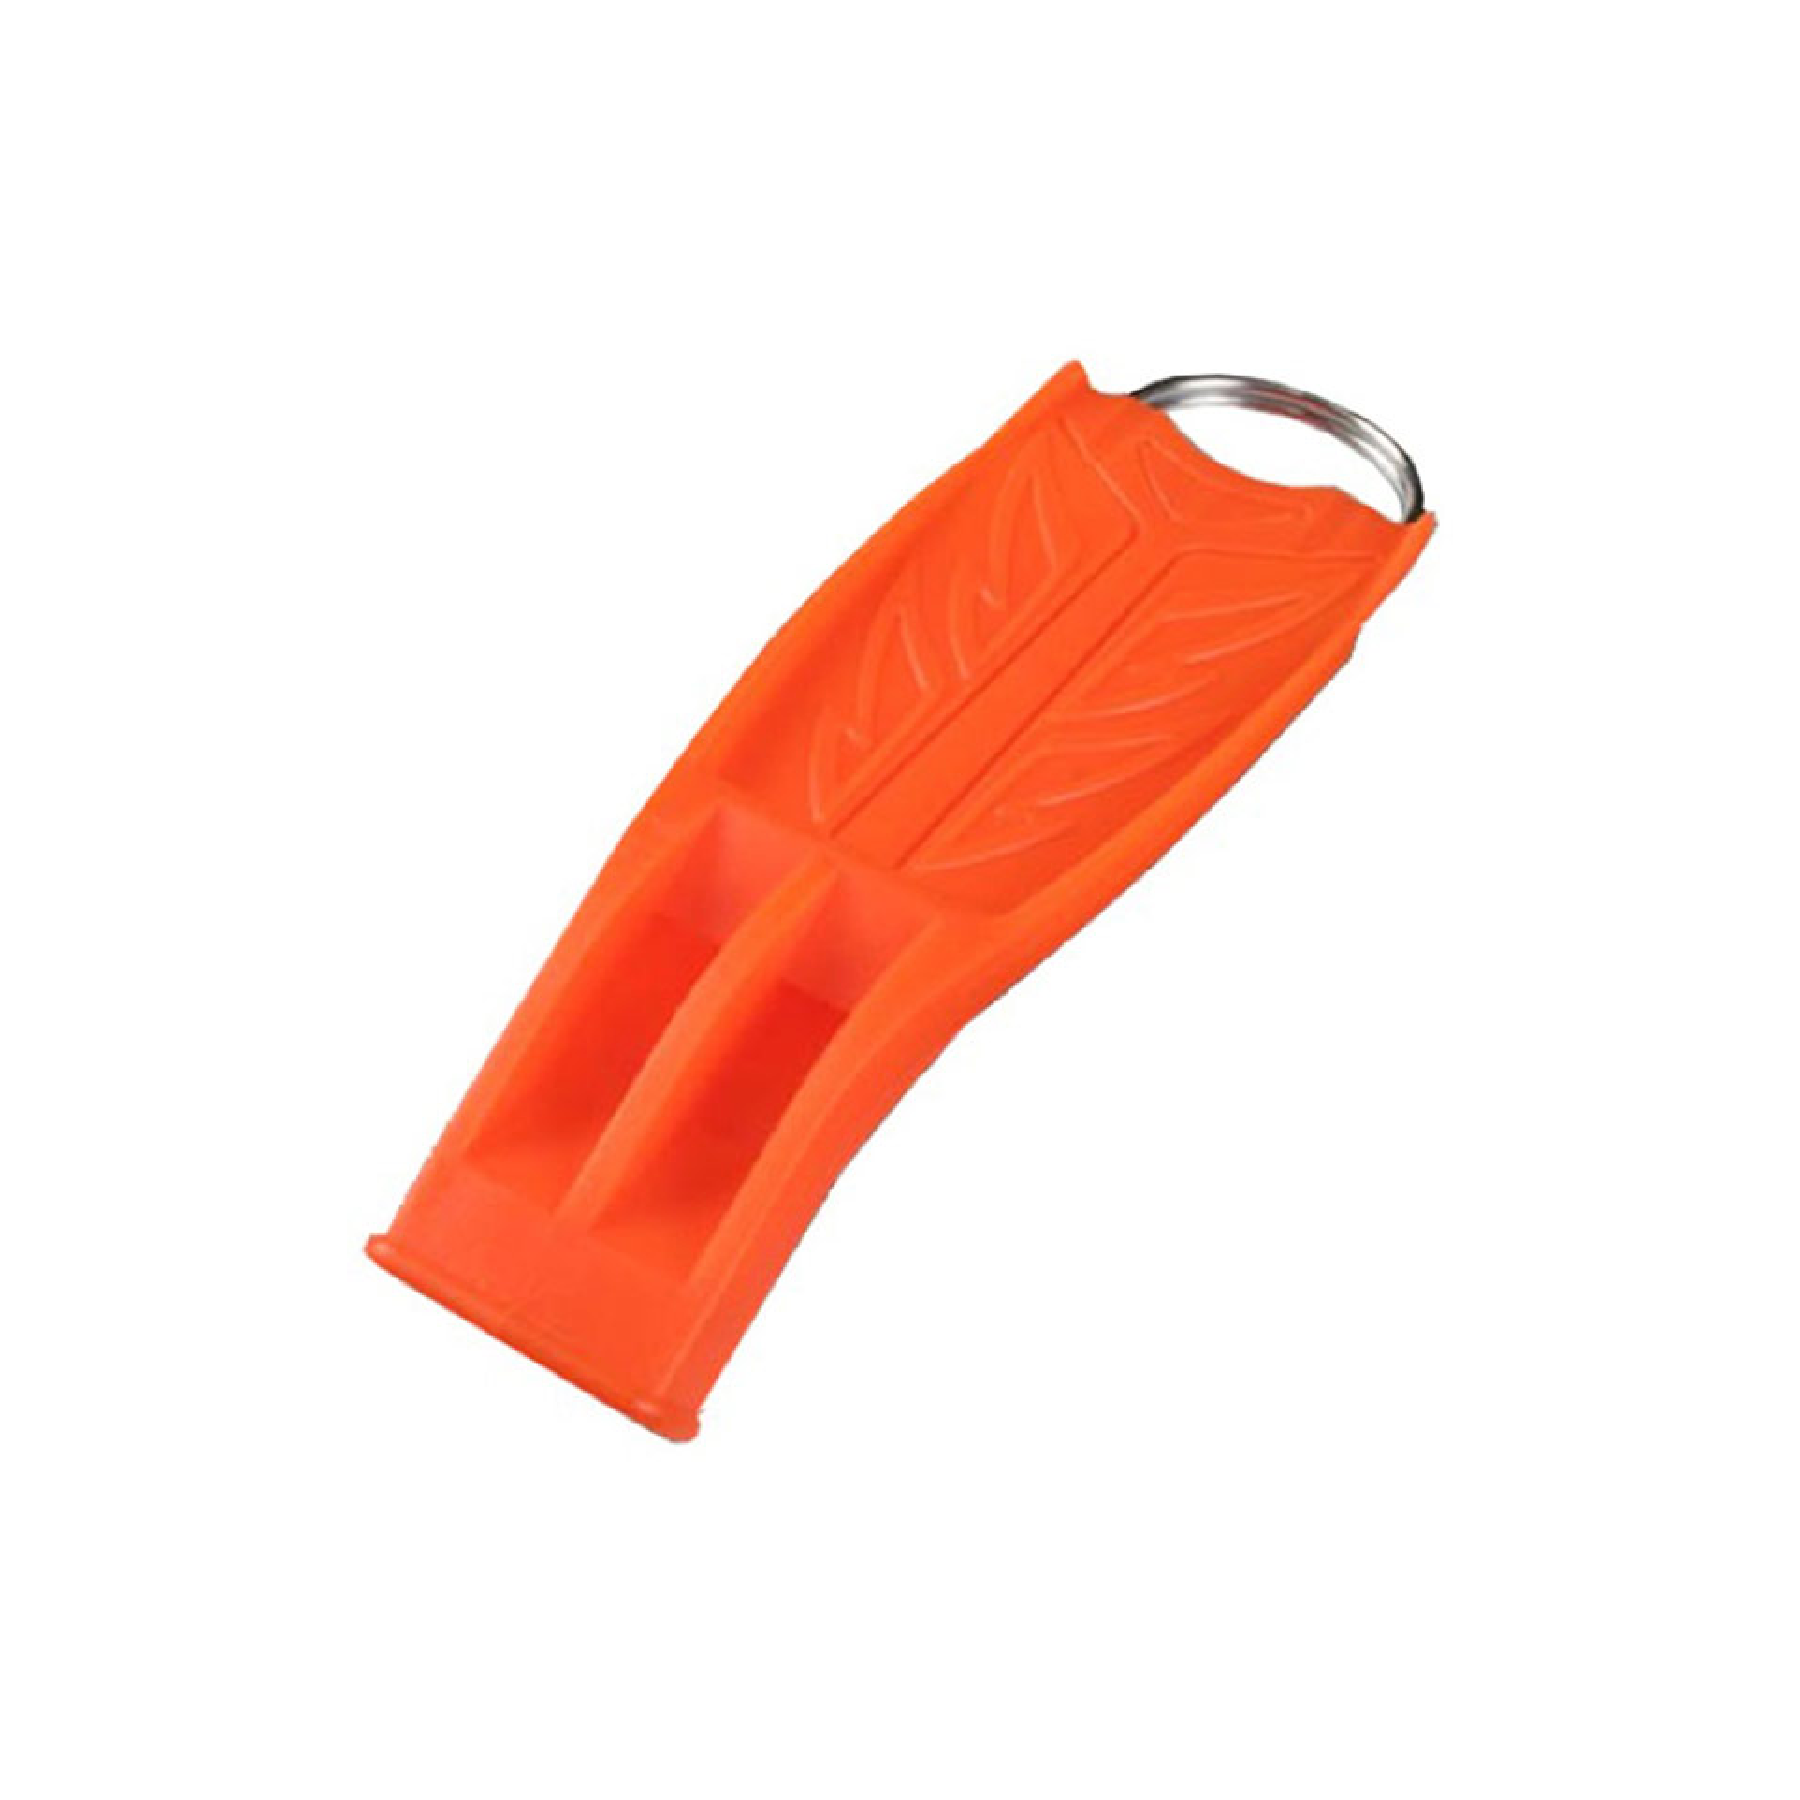 Ocean Pro Aquatec Whistle Orange